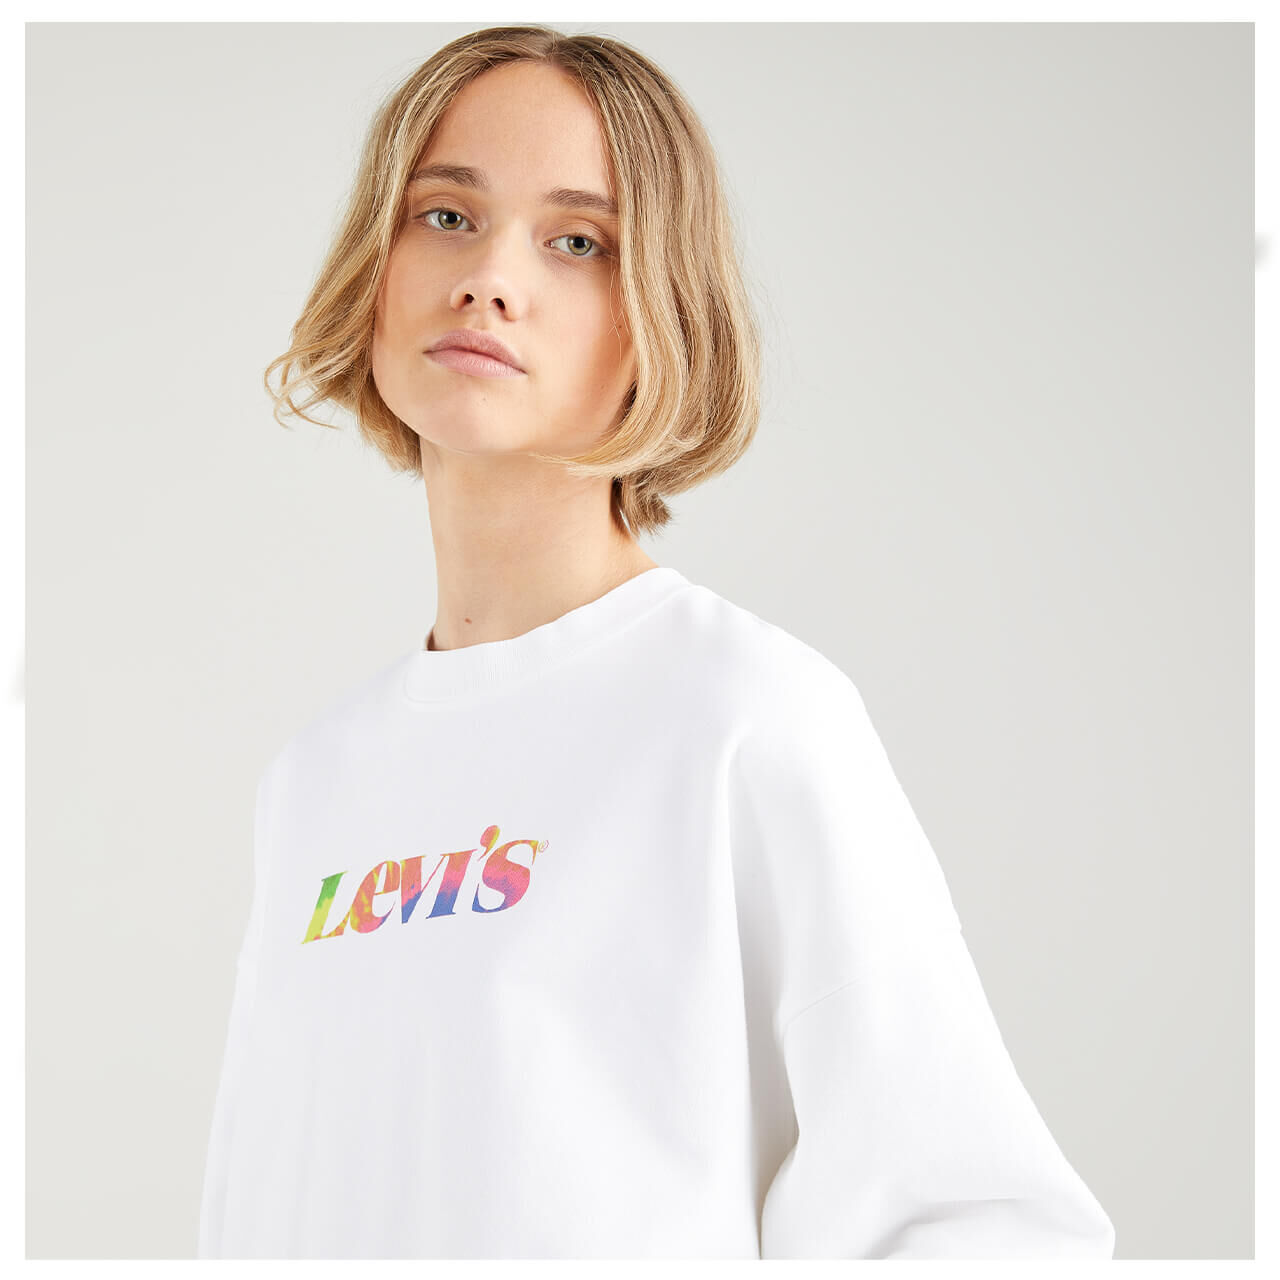 Levis Sweatshirt für Damen in Weiß mit Print, FarbNr.: 0000